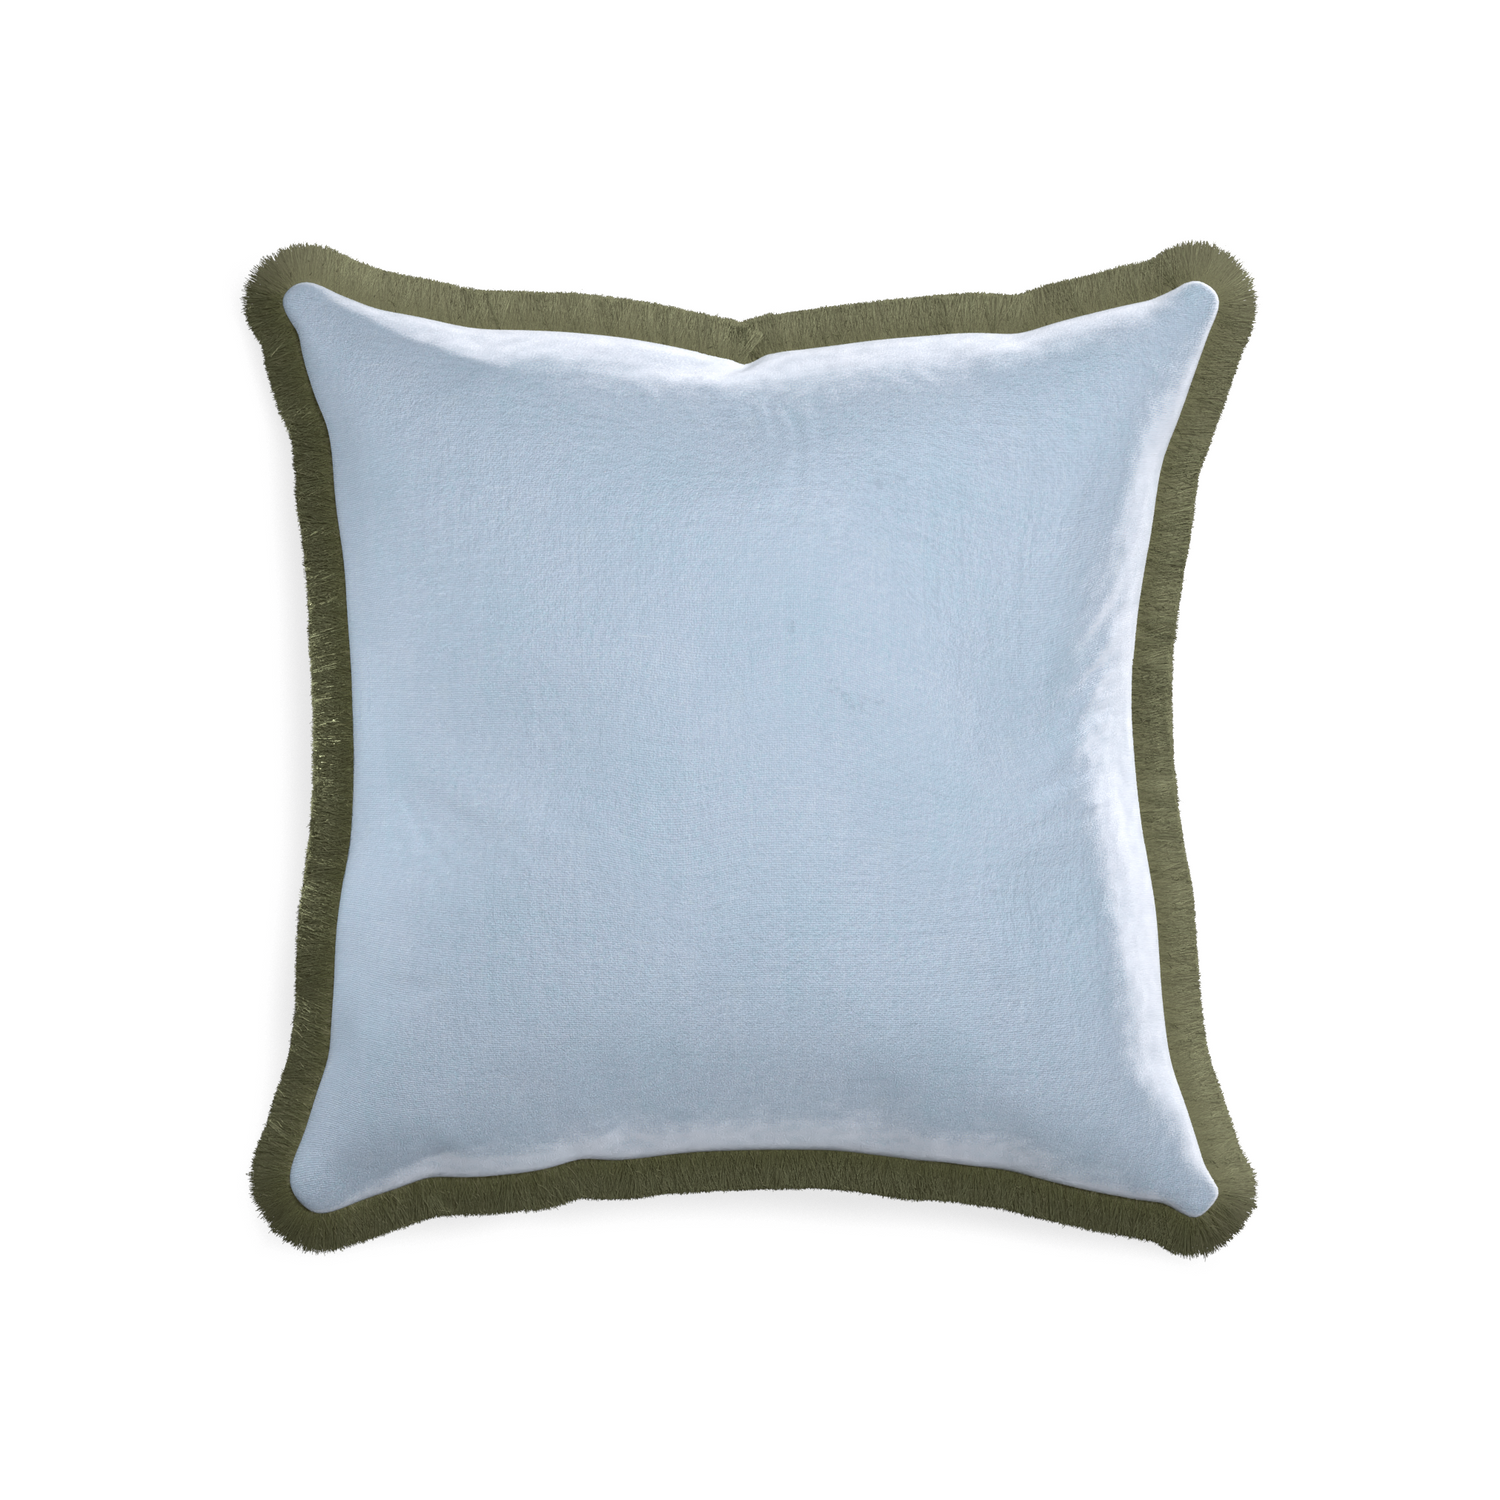 square light blue velvet pillow with sage green fringe 